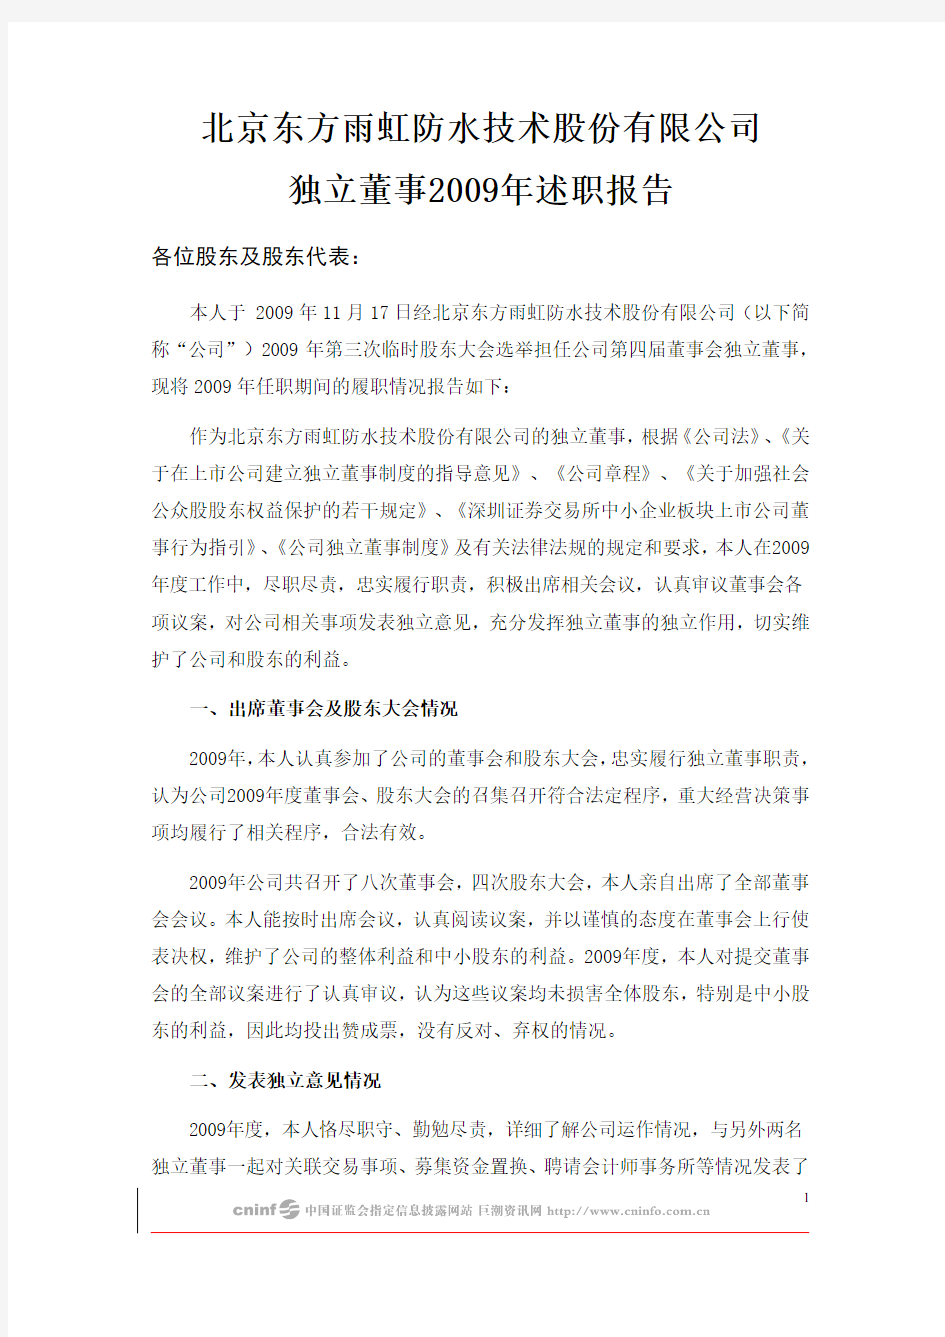 东方雨虹：独立董事2009年述职报告(黄庆林) 2010-01-30